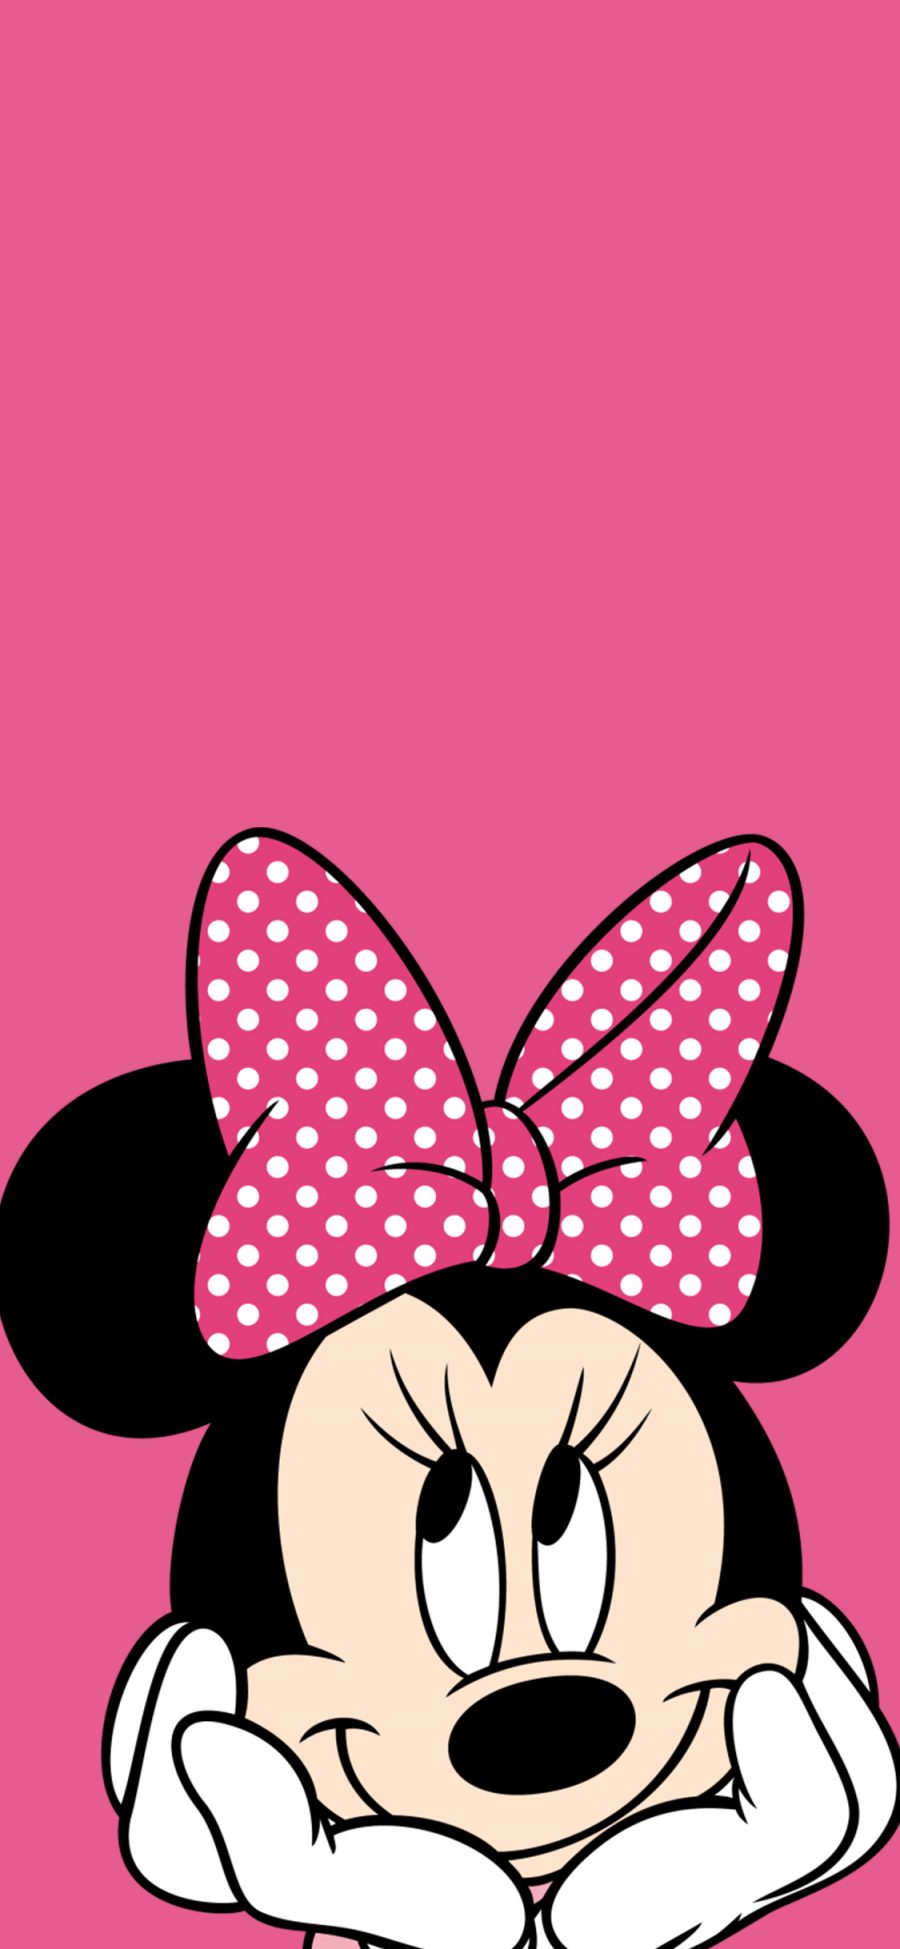 [2436×1125]米妮 米老鼠 粉色 迪士尼 动画 卡通 苹果手机动漫壁纸图片